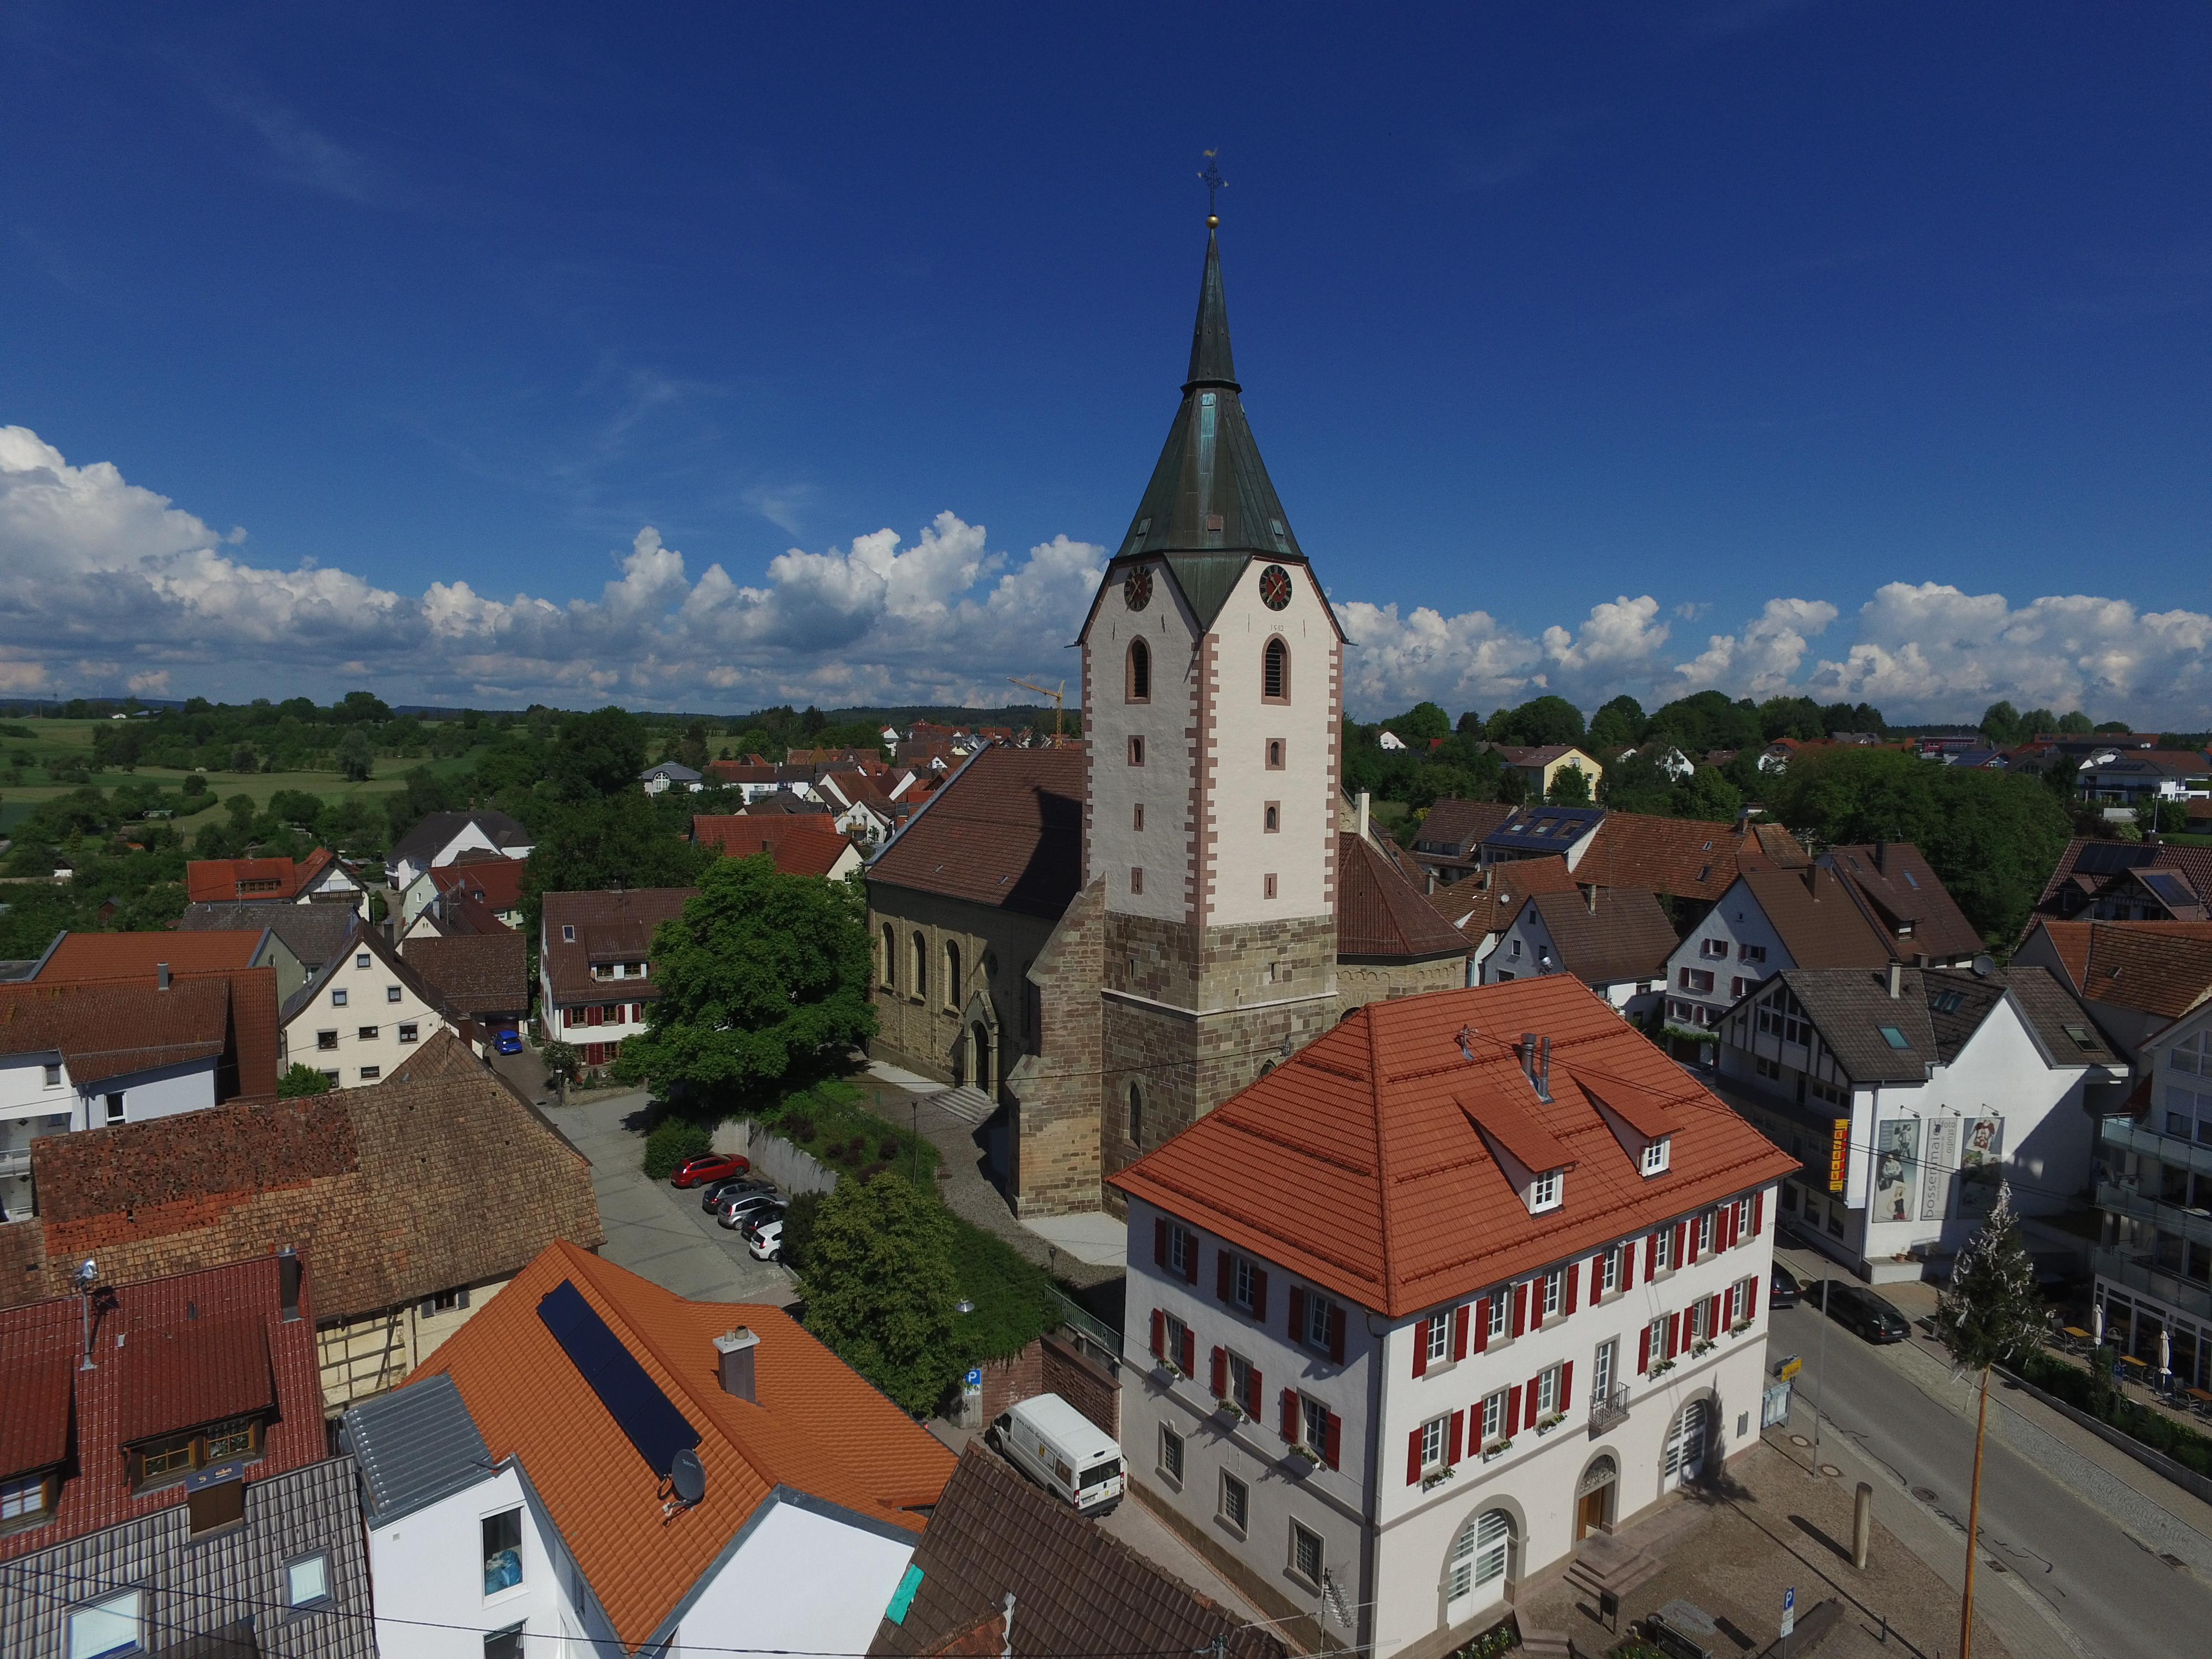  St. Georg aus der Luft mit Rathaus im Vordergrund. 